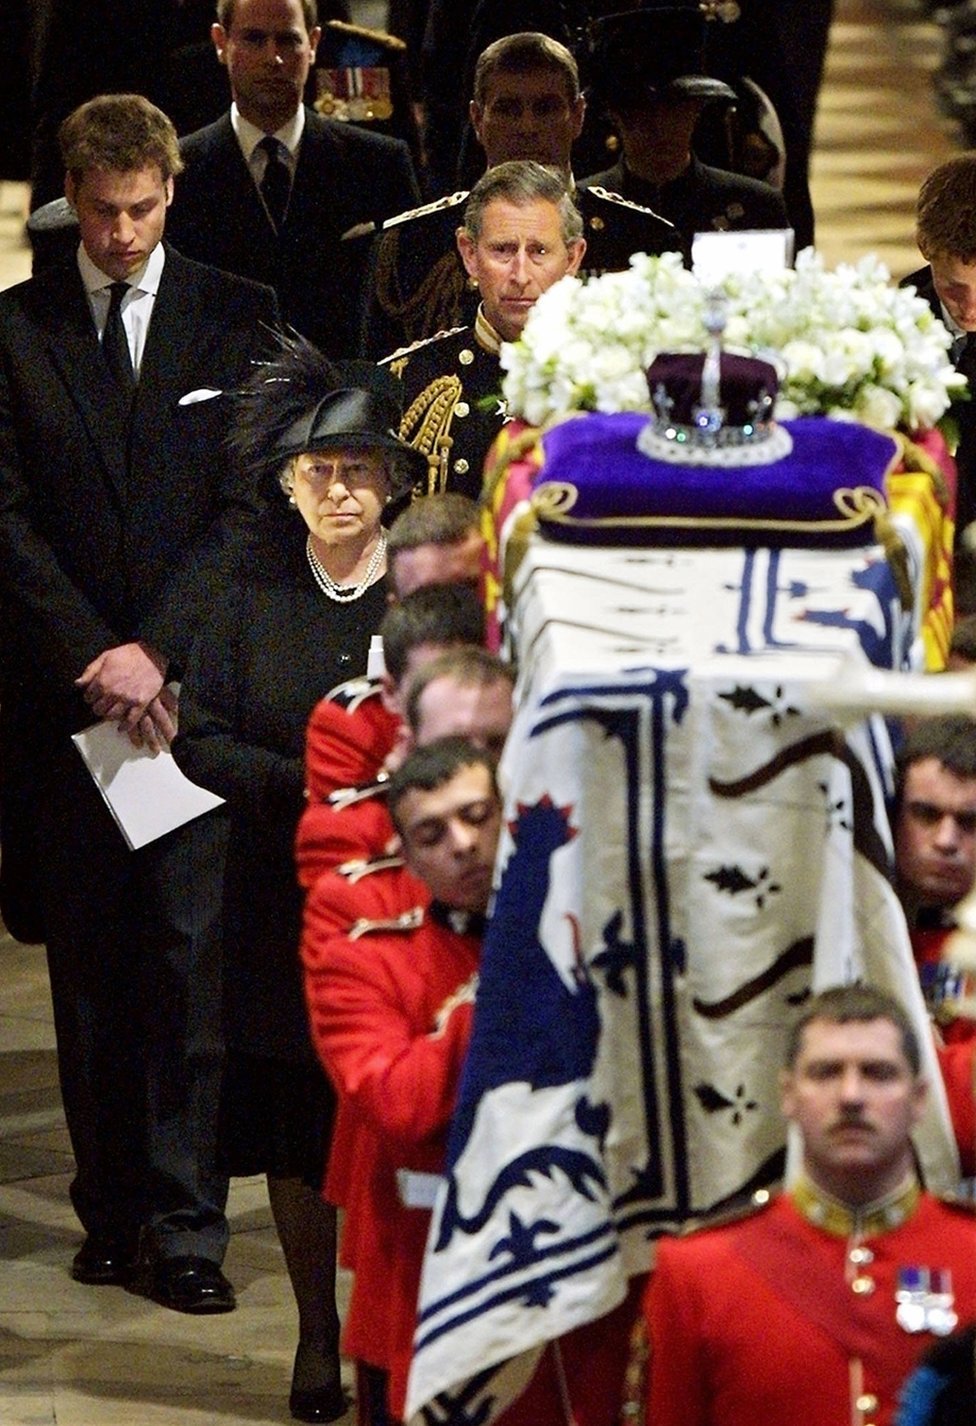 La reina Isabel II (frente) conduce a su familia mientras sigue a los portadores del féretro que llevan el ataúd de la reina Isabel, la reina madre, fuera de la Abadía de Westminster después del funeral en Londres el 09 de abril de 2002.